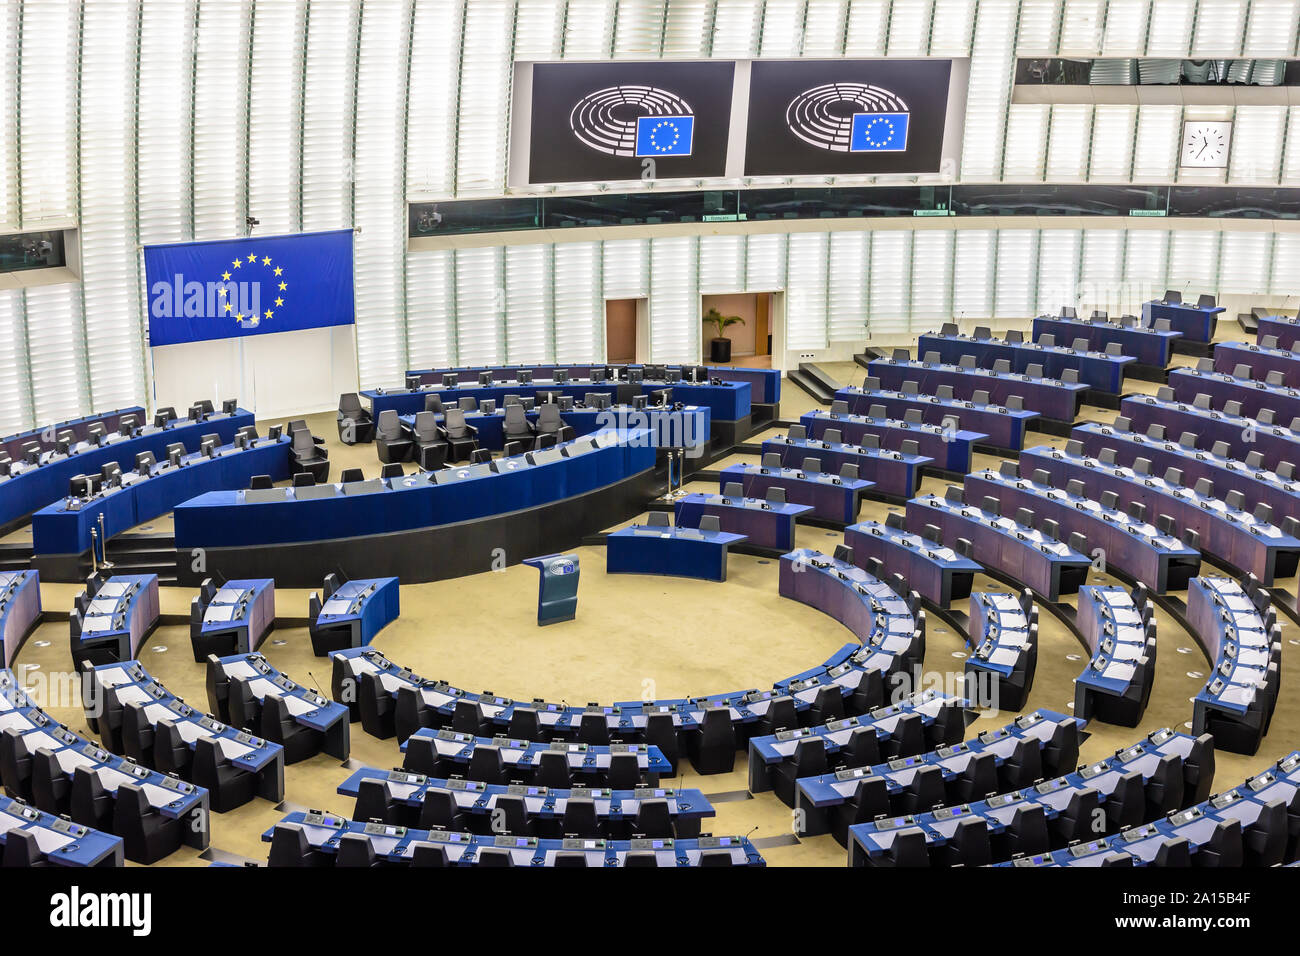 Scrivania del presidente nell'emiciclo del Parlamento europeo a Bruxelles in Belgio, sotto la bandiera dell'Unione europea. Foto Stock